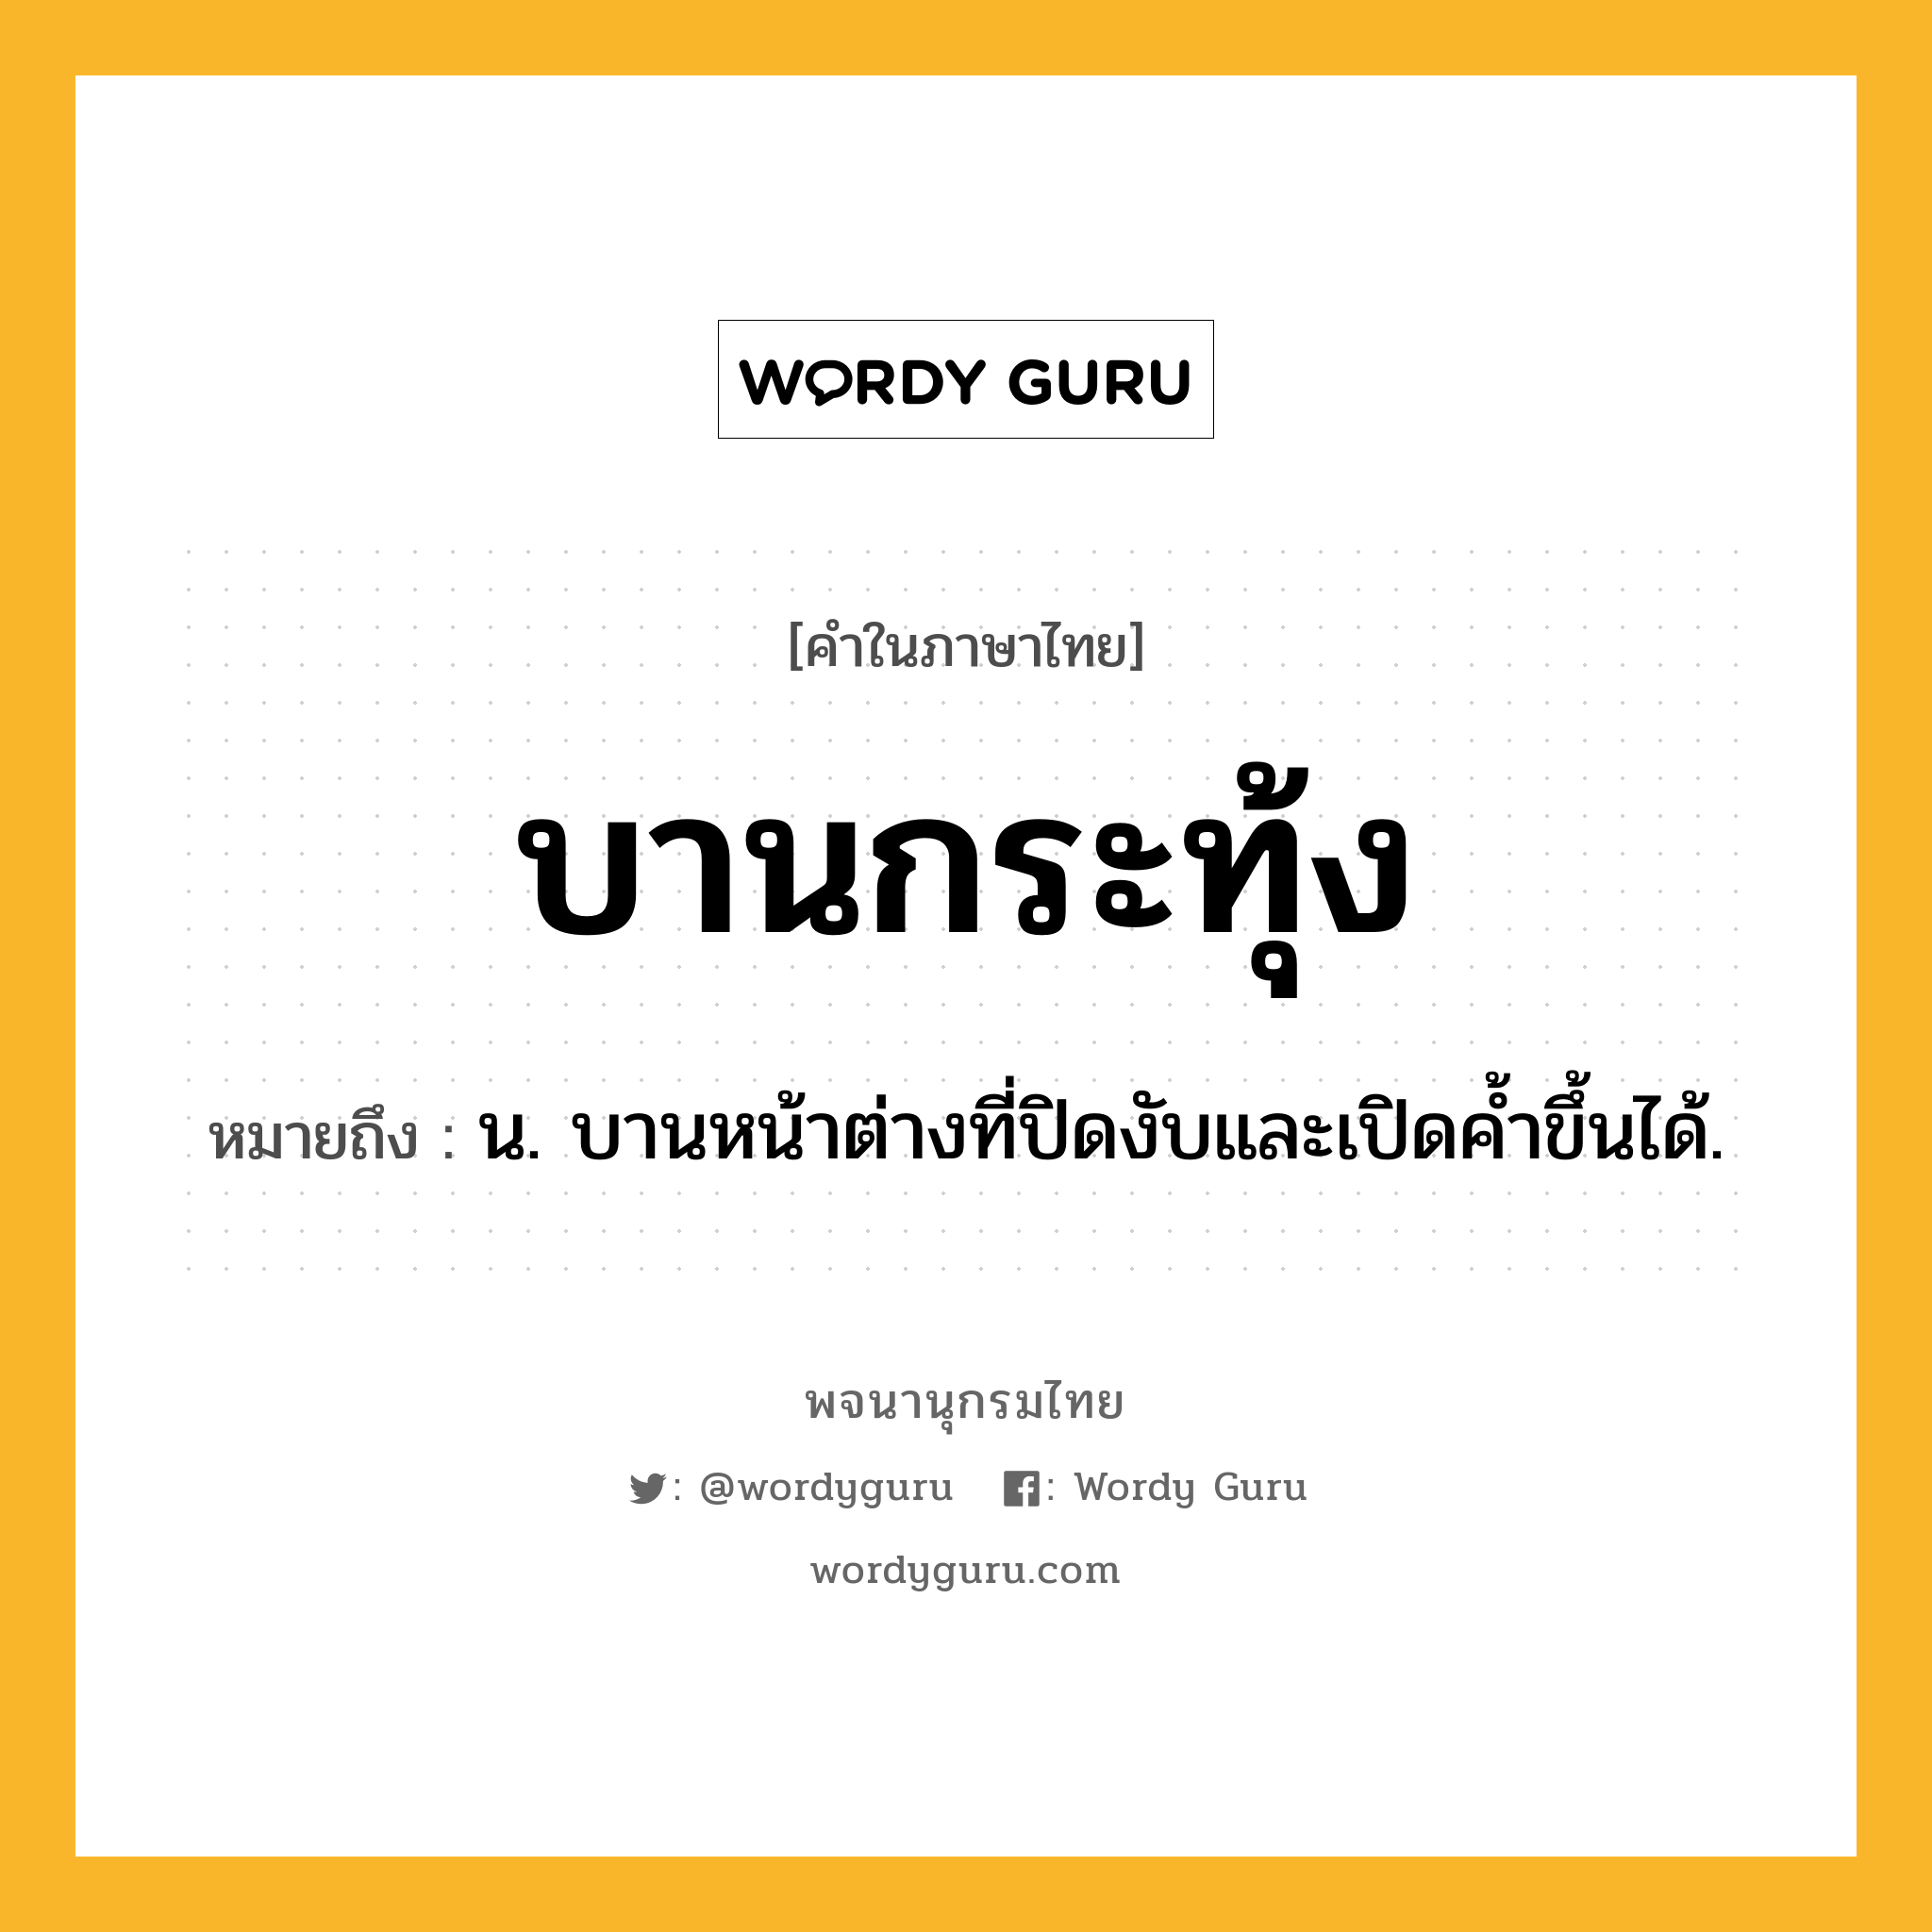 บานกระทุ้ง ความหมาย หมายถึงอะไร?, คำในภาษาไทย บานกระทุ้ง หมายถึง น. บานหน้าต่างที่ปิดงับและเปิดค้ำขึ้นได้.